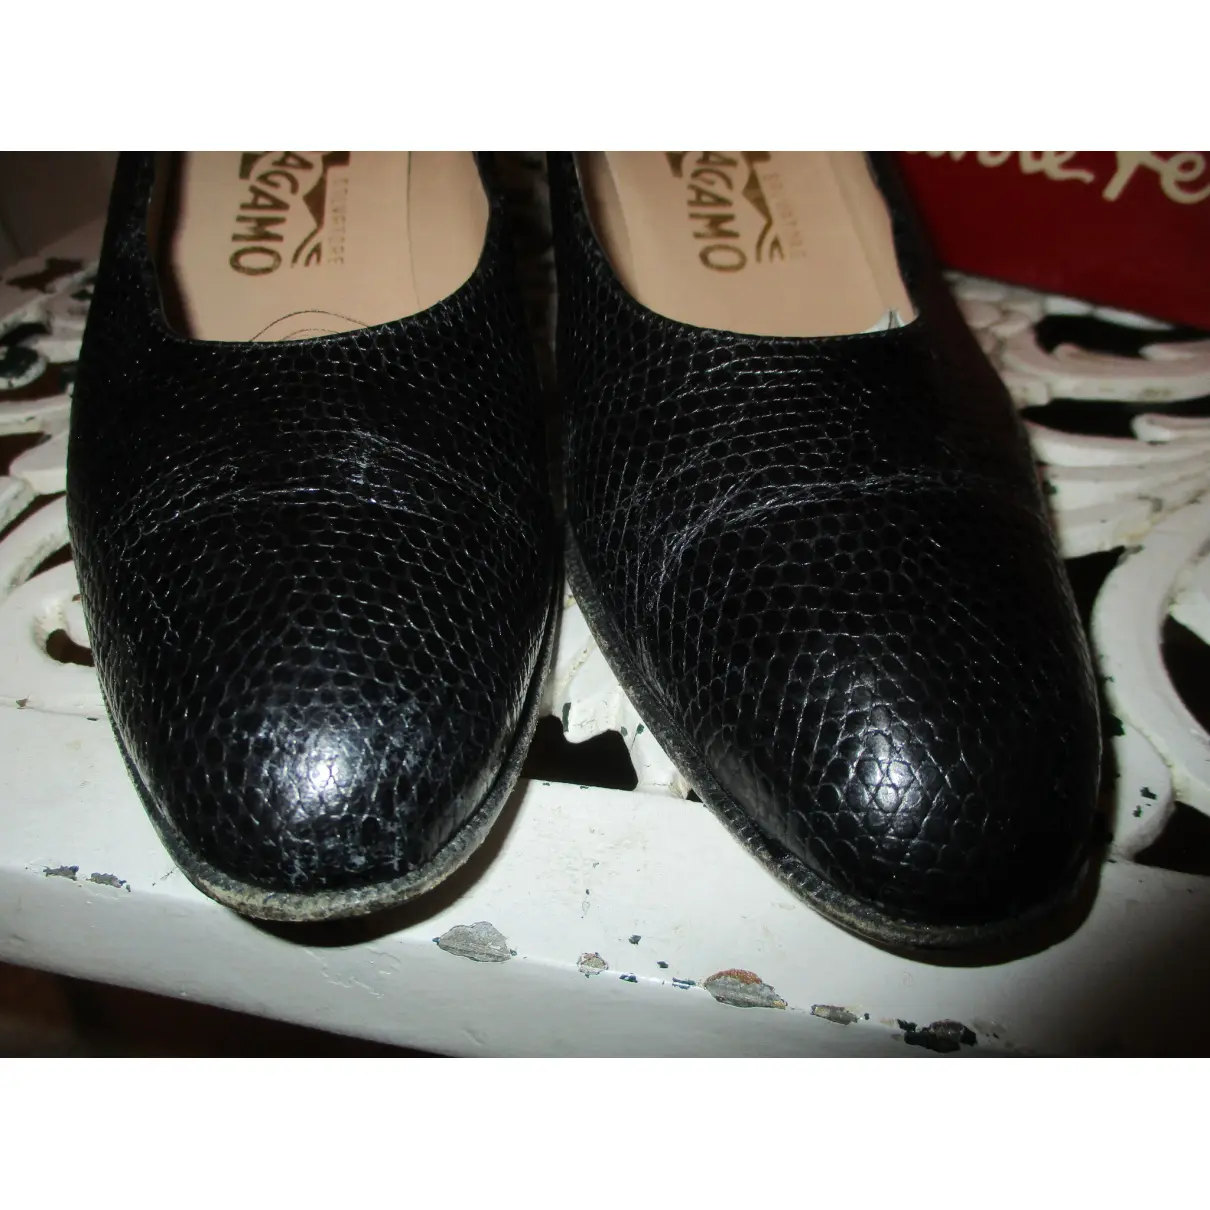 Buy Salvatore Ferragamo Leather heels online - Vintage